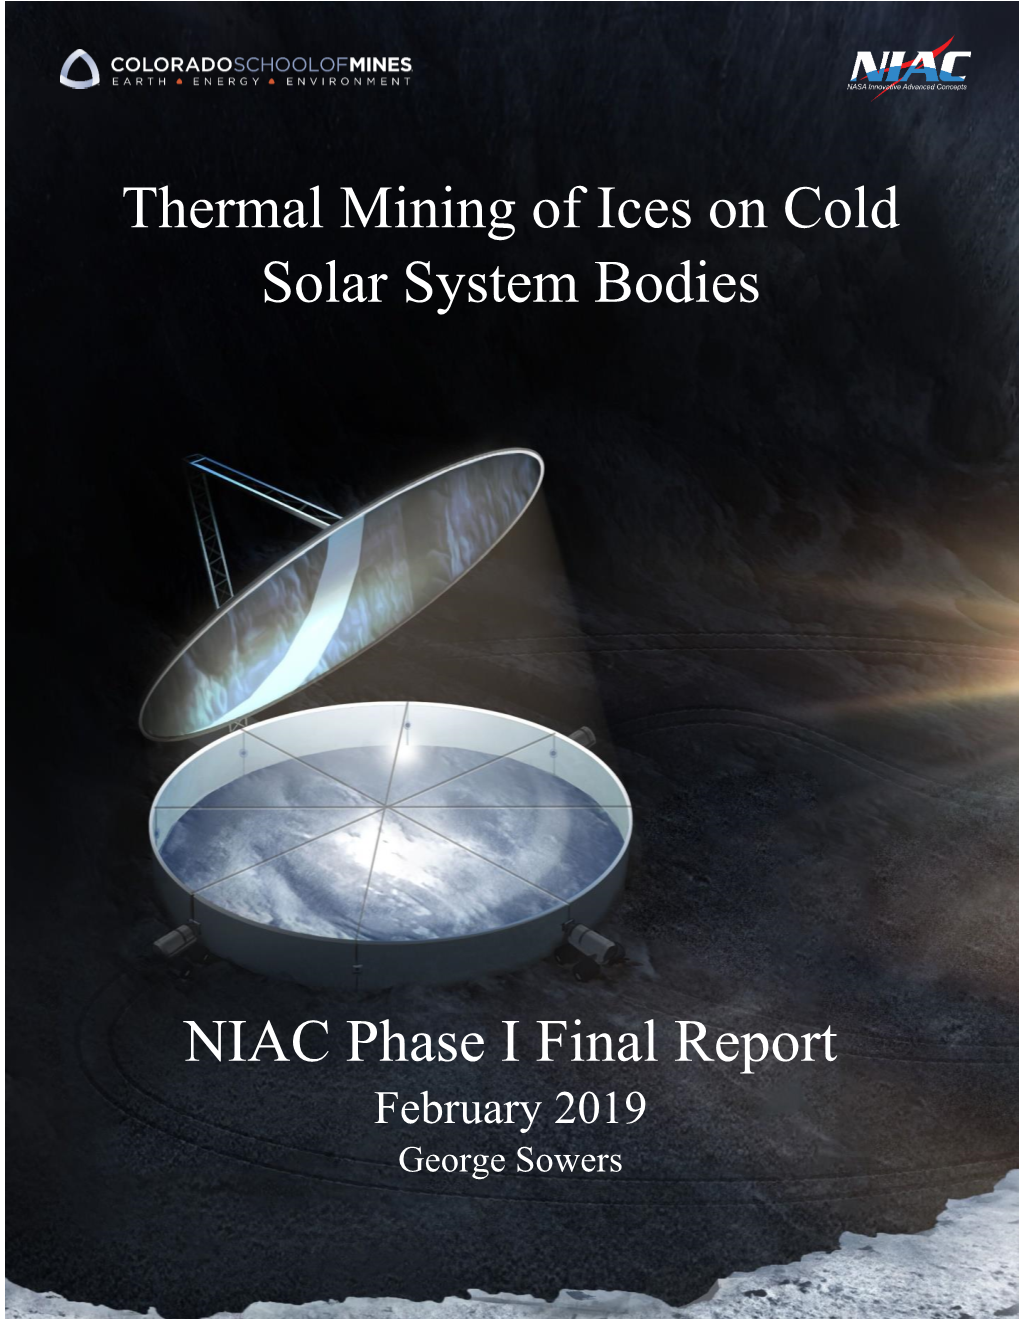 Sowers NIAC Final Report